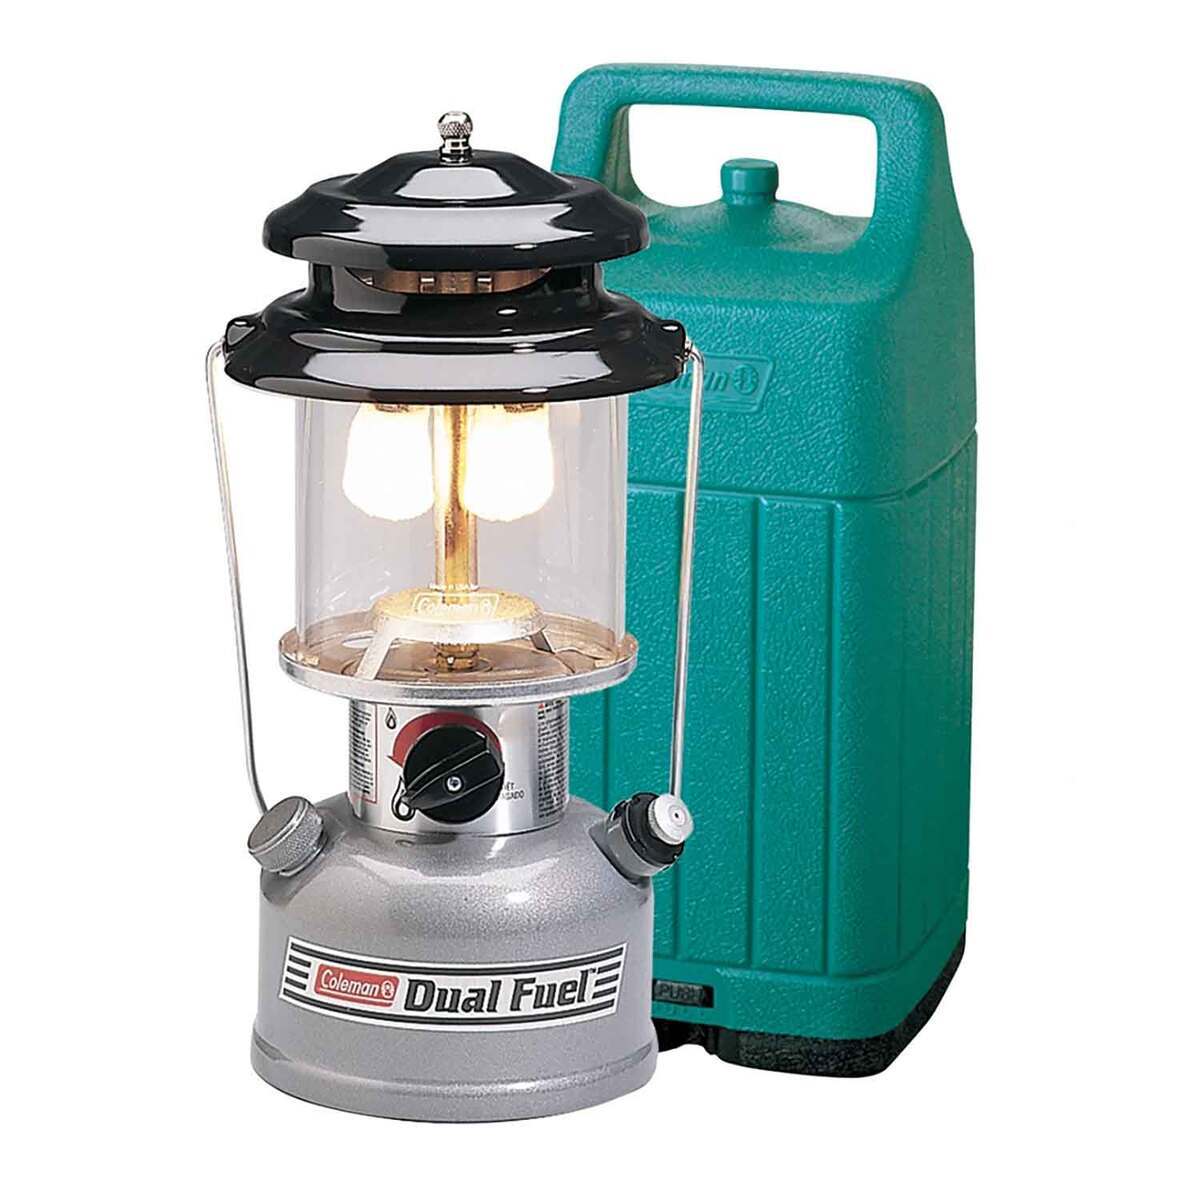 https://www.sportsmans.com/medias/coleman-premium-dual-fuel-lantern-with-case-gray-1858091-1.jpg?context=bWFzdGVyfGltYWdlc3w5NjU0NnxpbWFnZS9qcGVnfGgyYi9oZmYvMTE4MzQ5ODgxOTk5NjYvMTIwMC1jb252ZXJzaW9uRm9ybWF0X2Jhc2UtY29udmVyc2lvbkZvcm1hdF9zbXctMTg1ODA5MS0xLmpwZ3xhMTQ5ODE1OTIxNmU2YTcyNWZlZTcyNTQ3NDhkYzllMTgyNjMwMzI2ZWFjZTNlMjY4OWU2MjhkNzc5MTg5NmI1